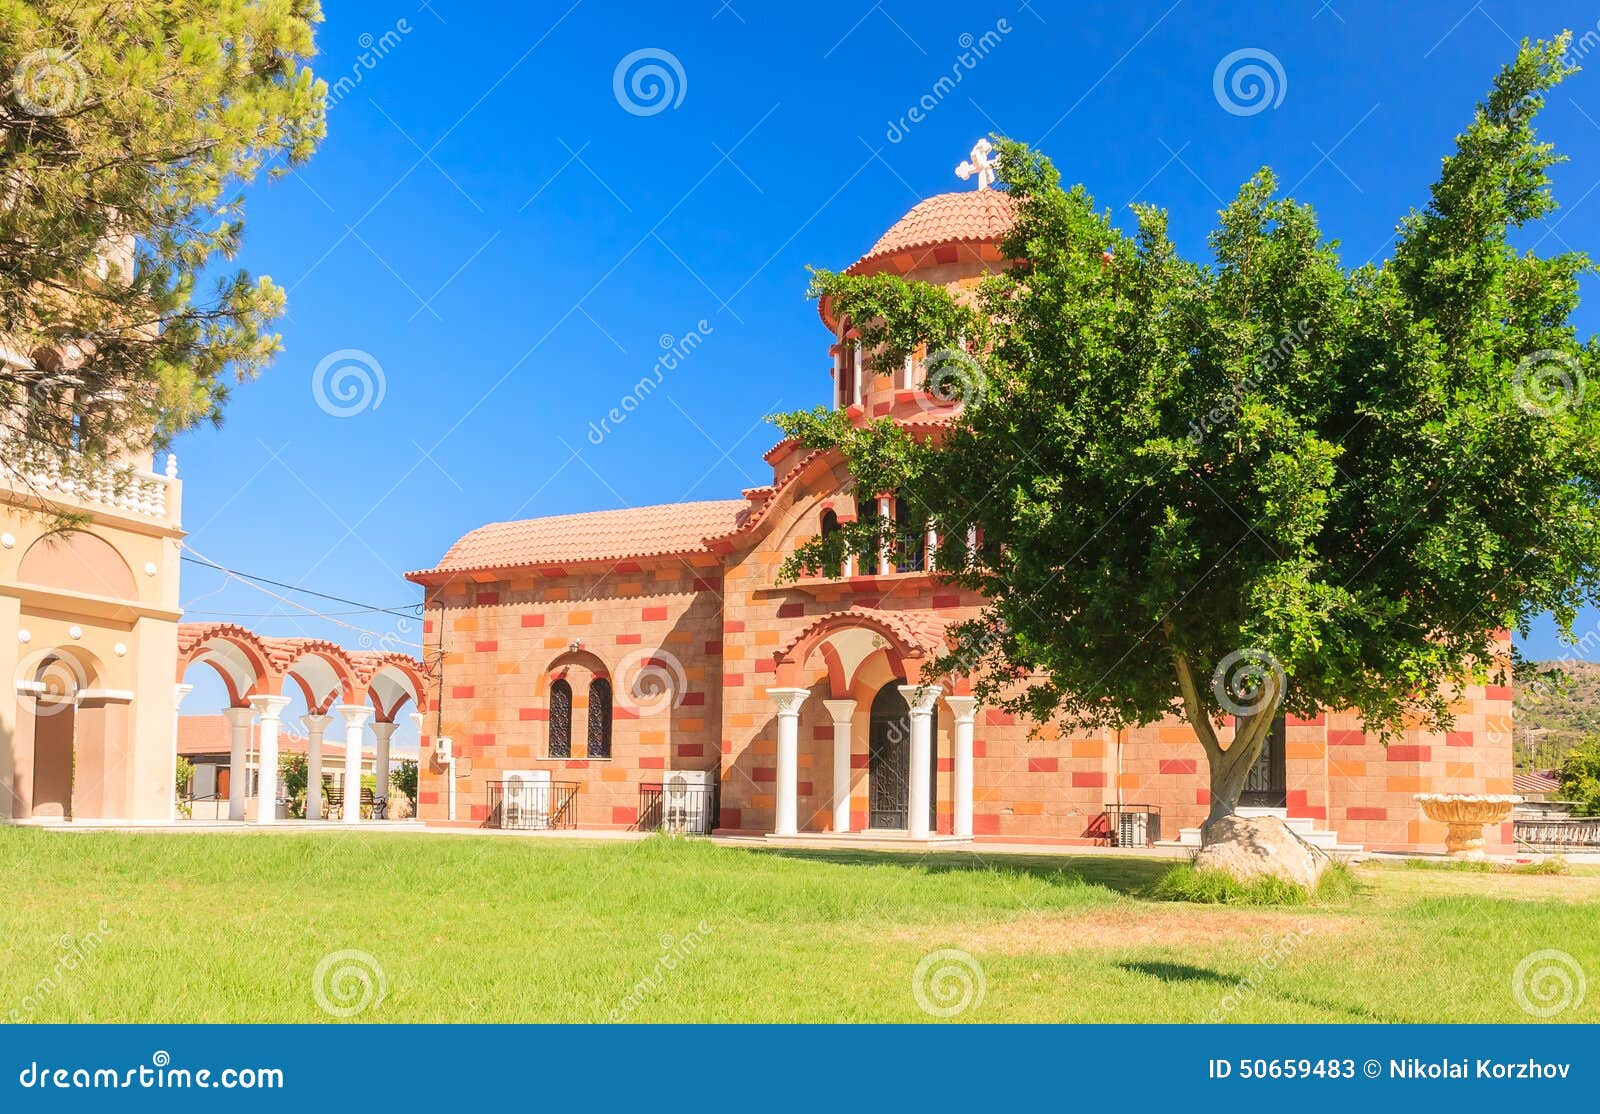 church in the village of pilon (pylonas). rhodes island